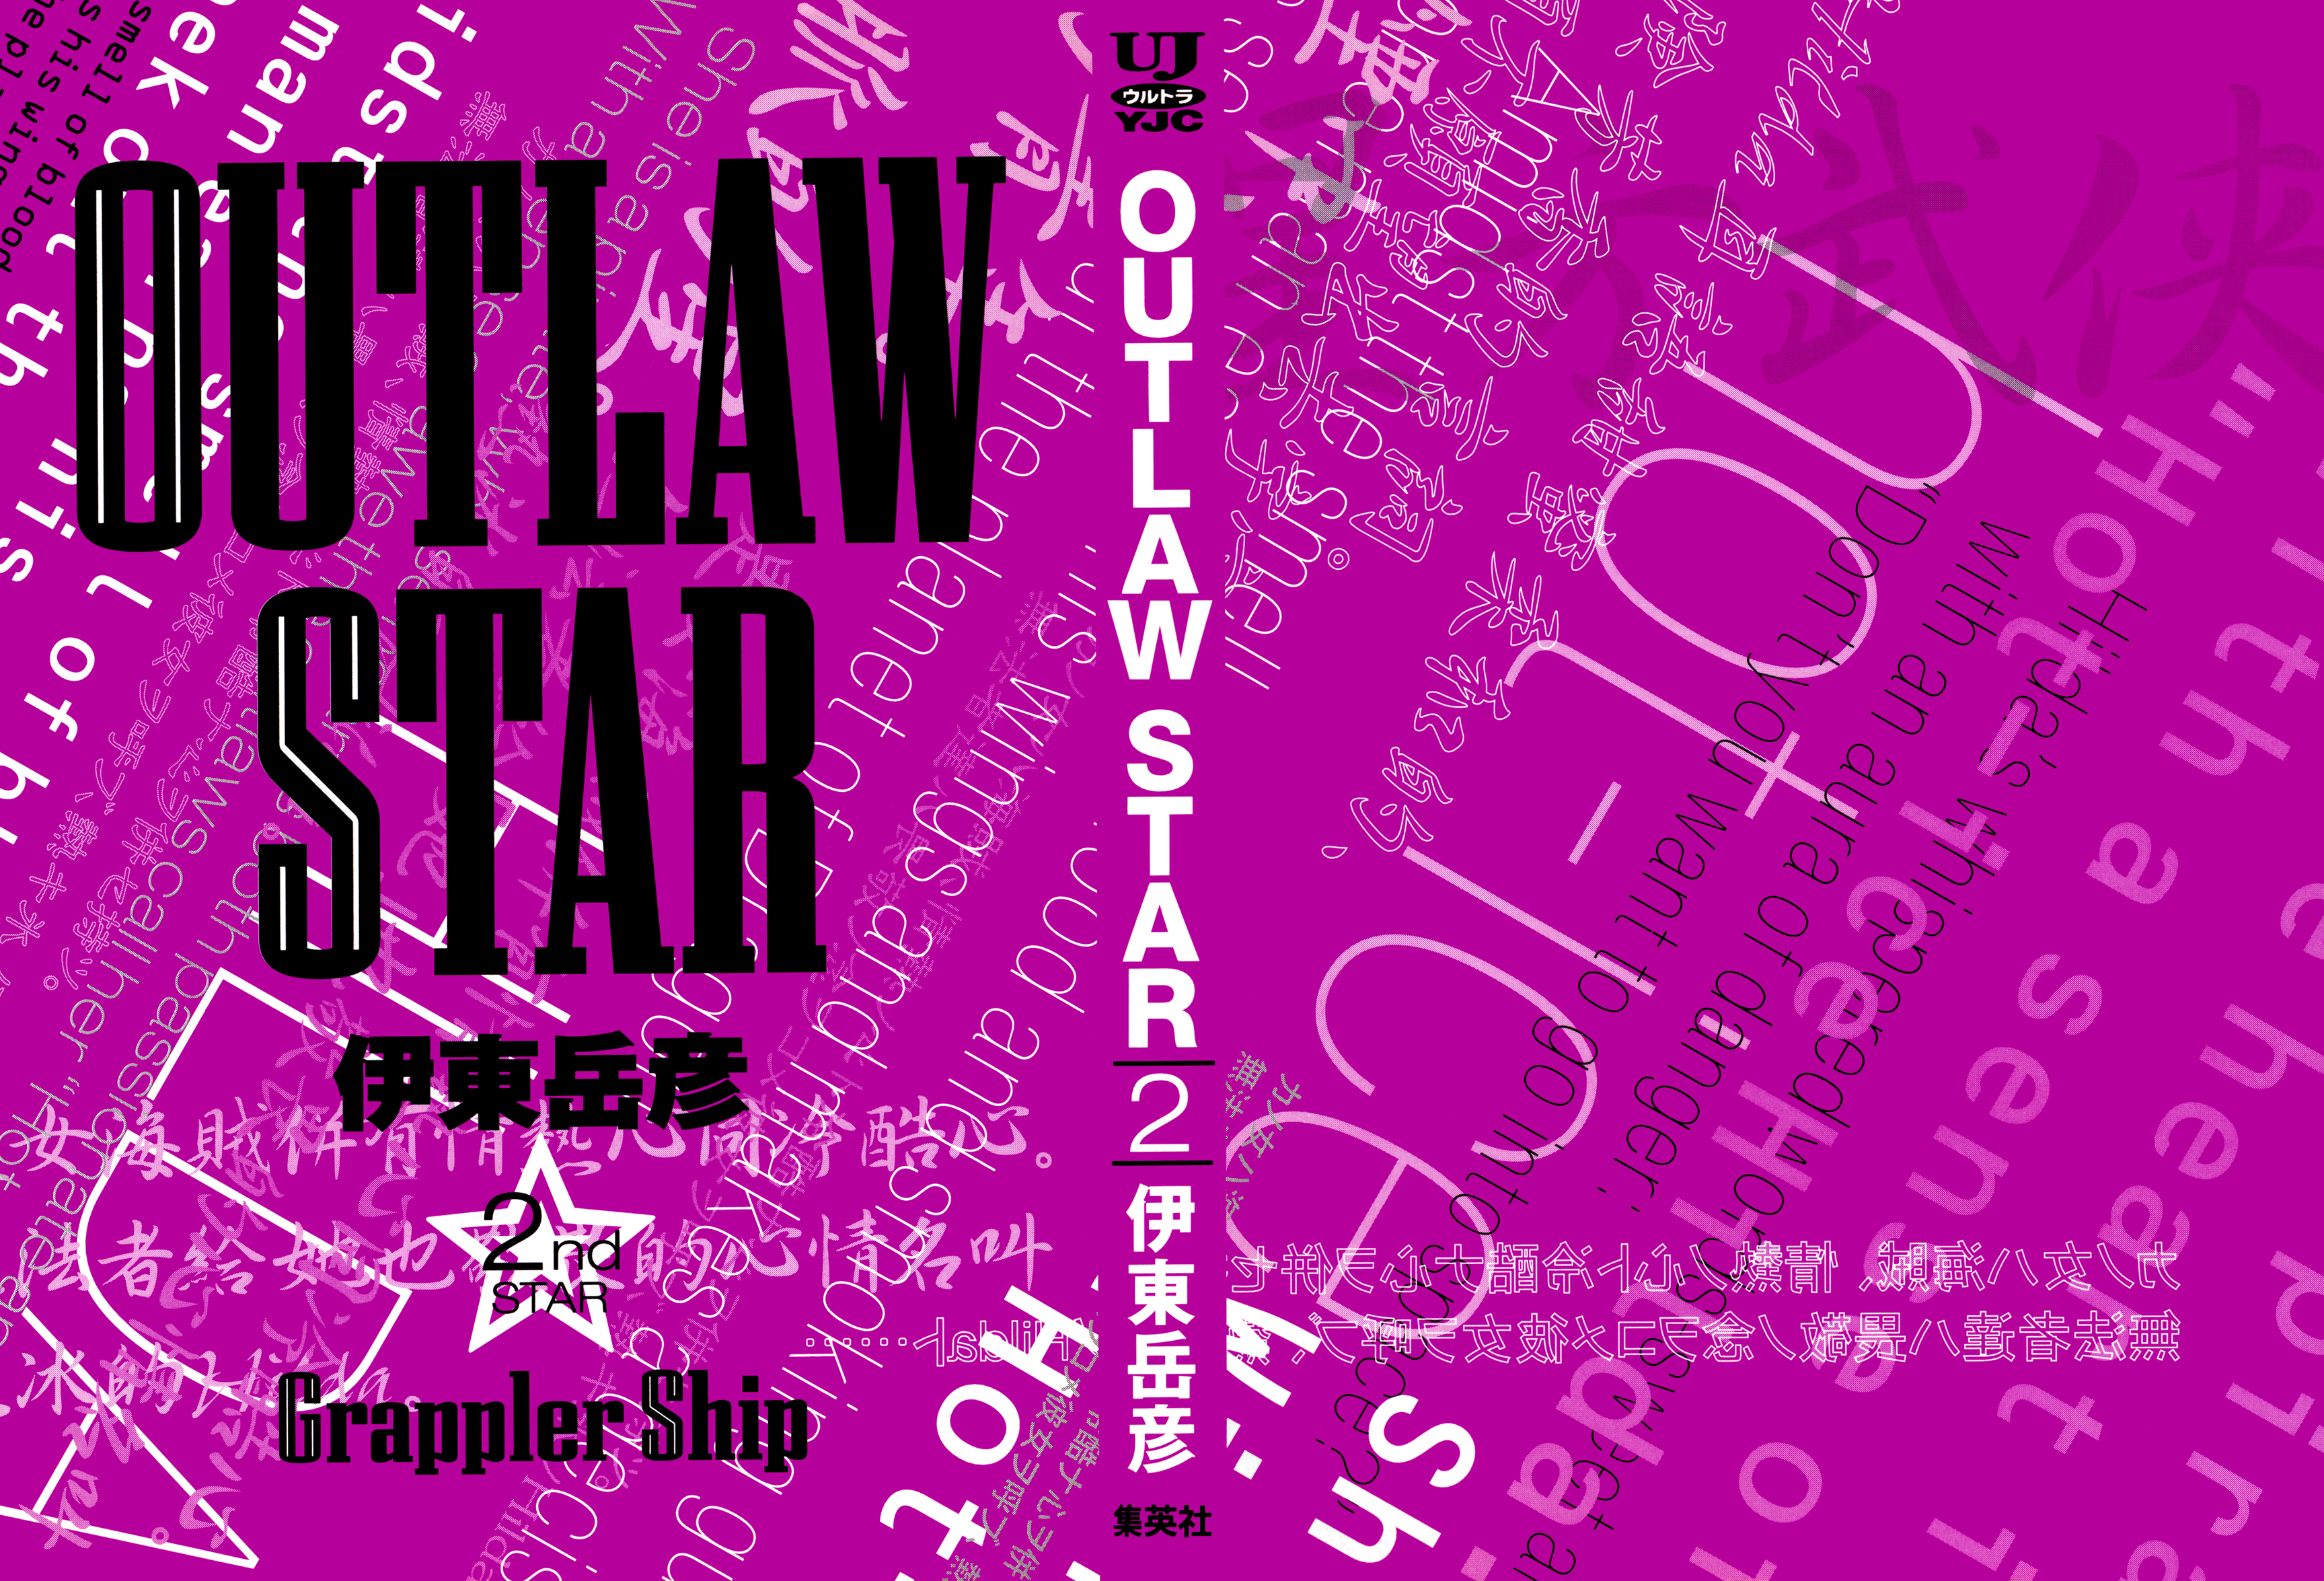 Outlaw Star Vol.002 Ch.005